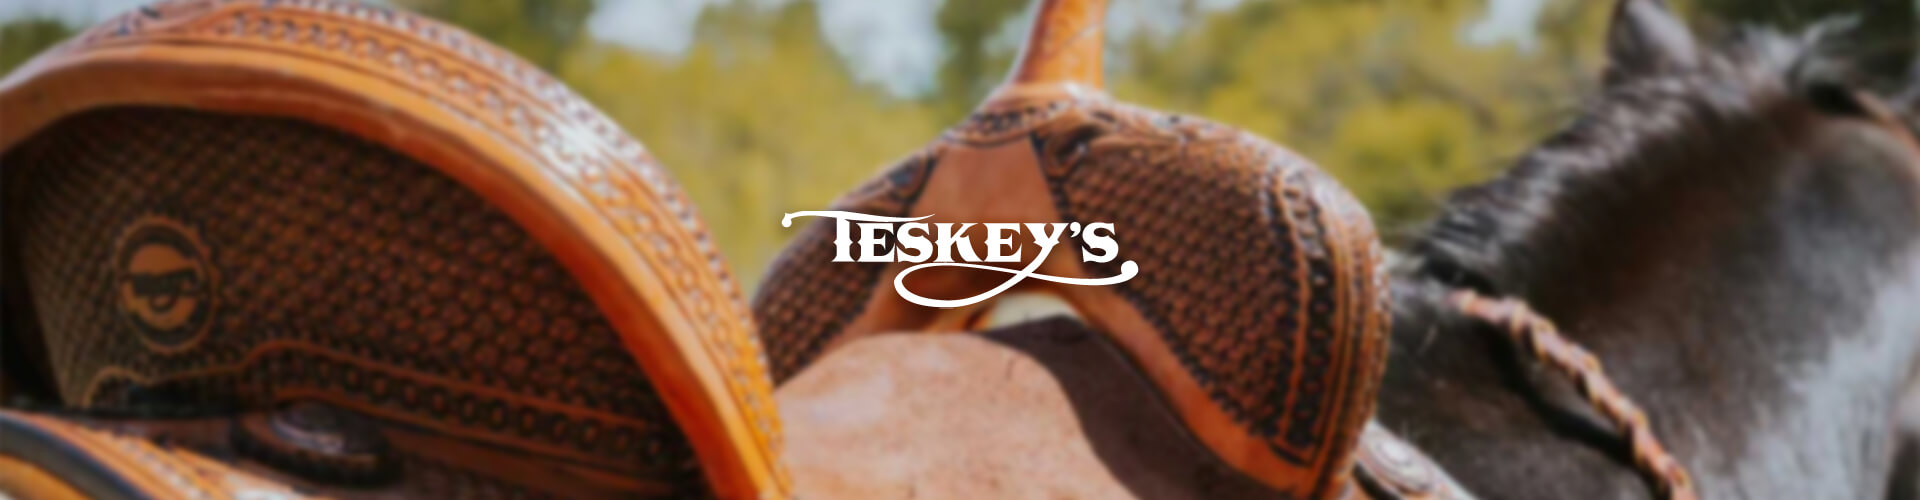 Teskey's Saddle Shop - Logical Position